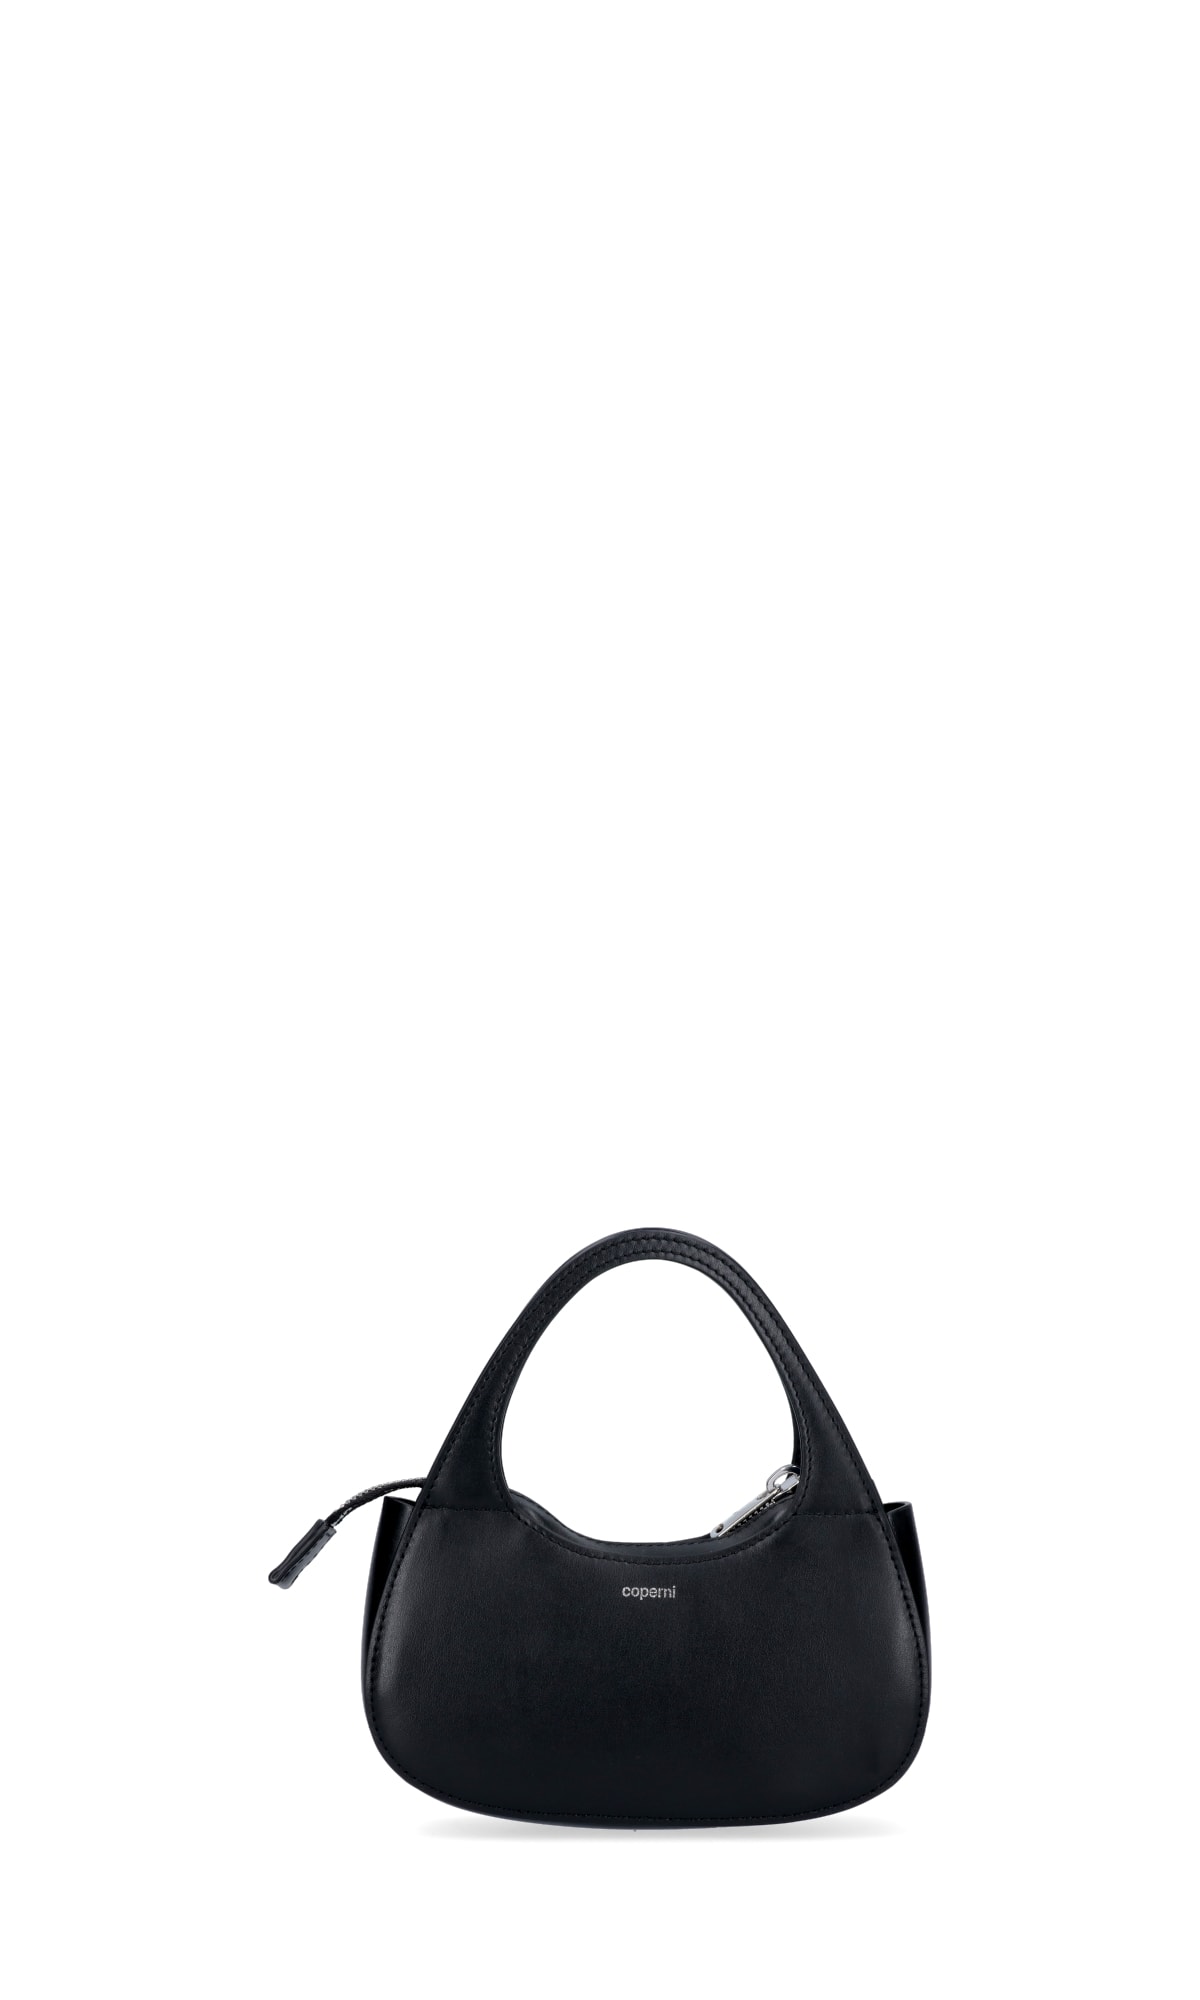 Coperni Shoulder Bag In Black | ModeSens